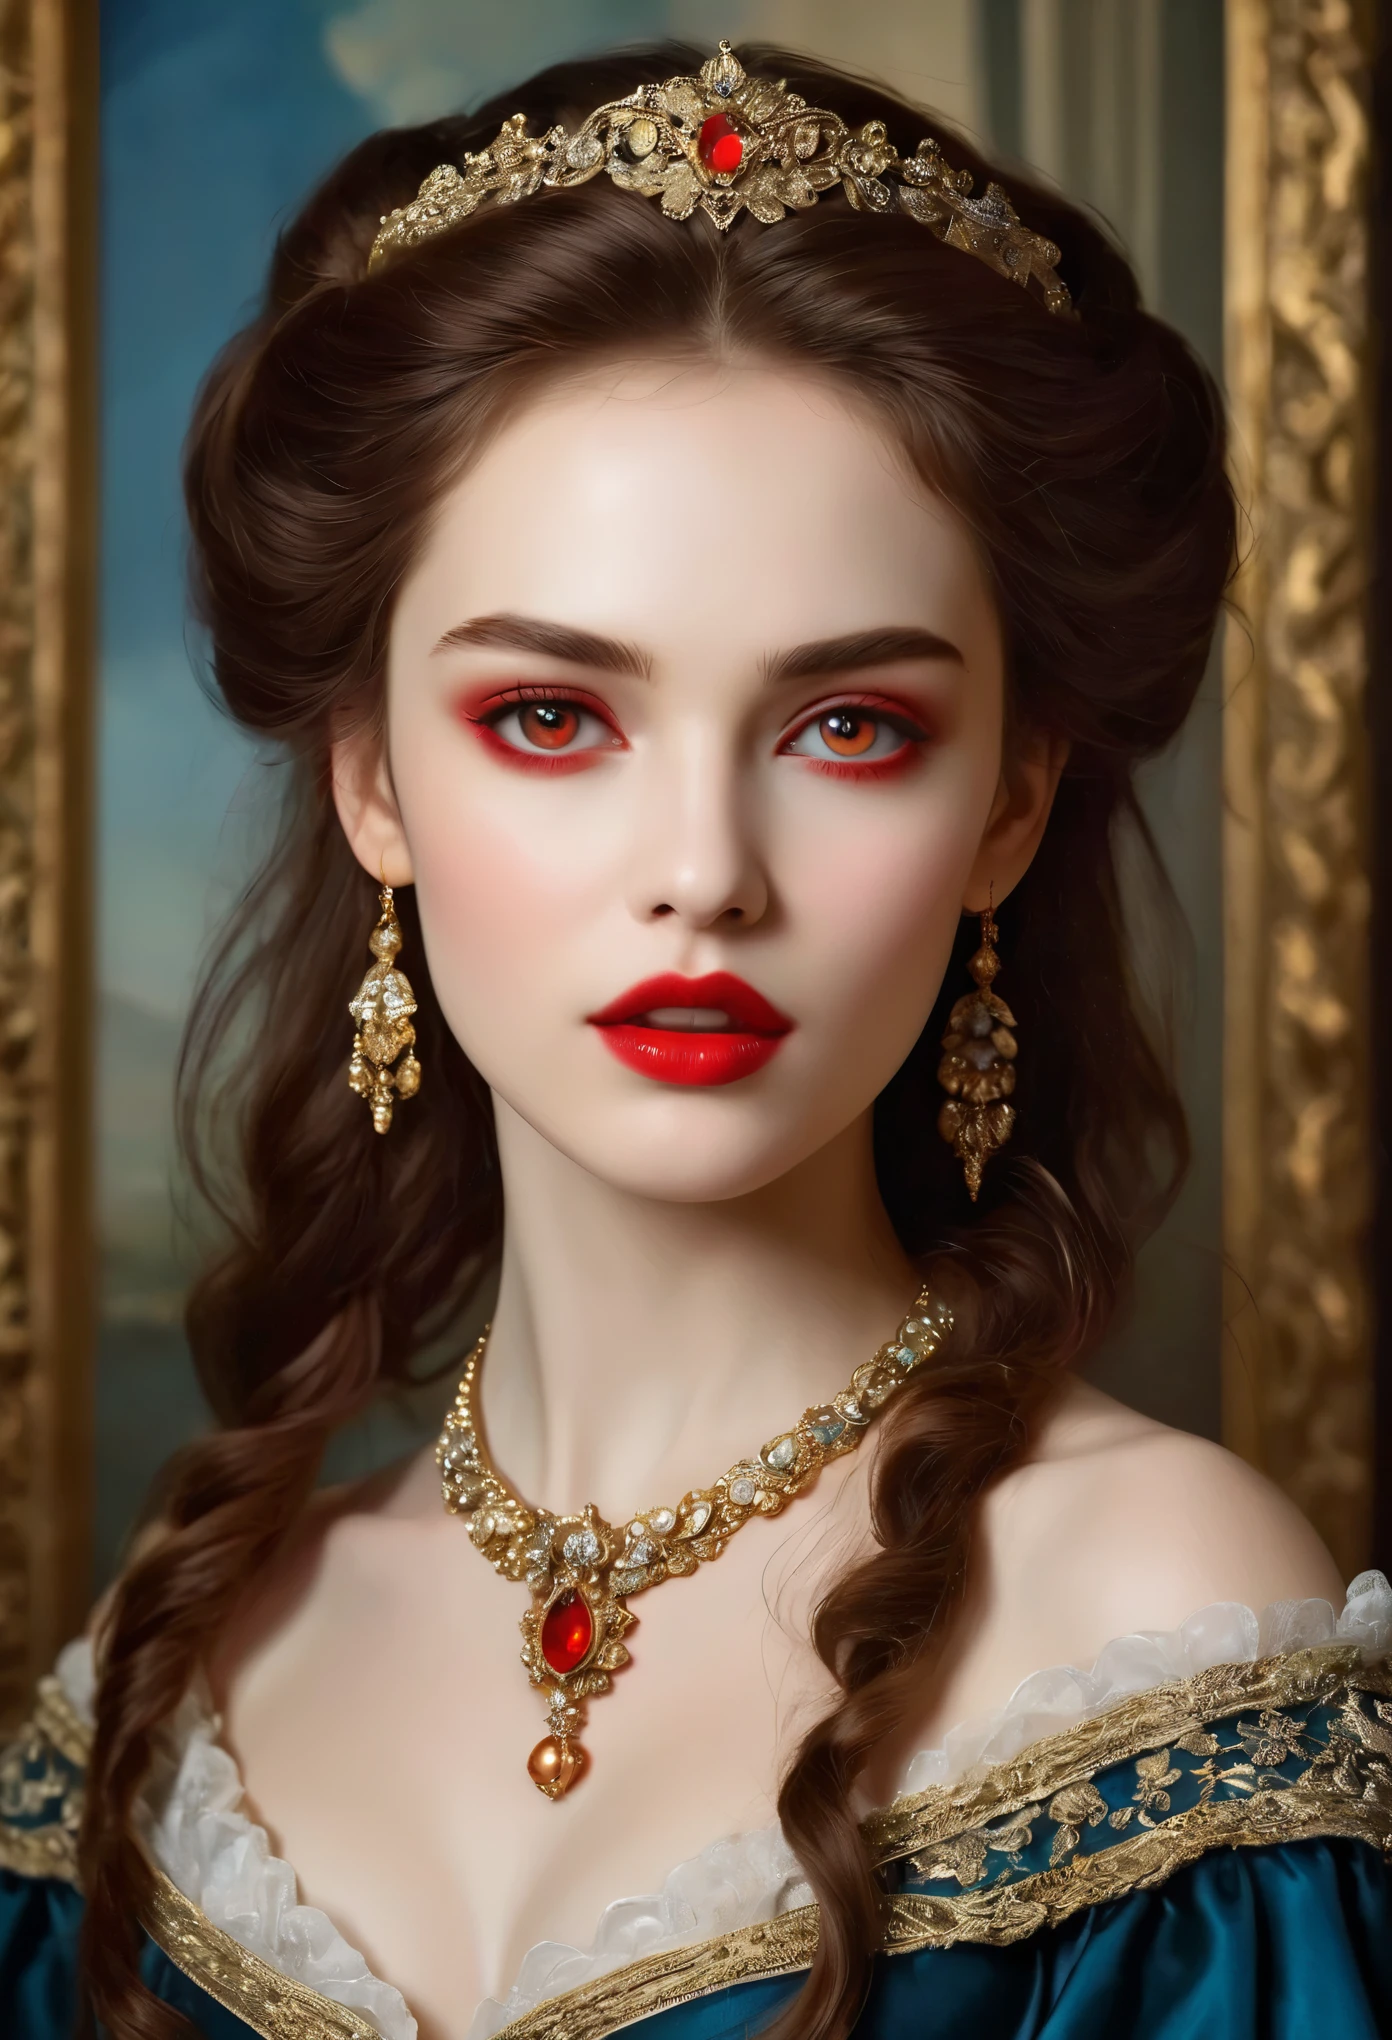 (hohe Auflösung,Meisterwerk:1.2),(Realistisch:1.37)Porträt eines russischen Vampirmädchens aus dem 18. Jahrhundert von unvergleichlicher Schönheit. Sie hat bezaubernde rote Augen und zarte rosige Lippen. Long fangs, Das Porträt ist bis ins kleinste Detail sorgfältig gezeichnet., Erfassen Sie die subtilen Nuancen ihrer Gesichtszüge. Sie trägt ein wunderschönes Seidenkleid, Verziert mit aufwendiger Spitze und zarter Stickerei. Dieses Gemälde spricht vom Luxus der Zeit., Luxuriöse Samtvorhänge und goldene Möbel im Hintergrund. Die Beleuchtung ist weich und diffus, Markiere das Mädchen&#39;s anmutige Schönheit. Die Farben sind lebendig und reichhaltig, Schaffen Sie überzeugende visuelle Erlebnisse. (Dieses Porträt ist im klassischen Porträtstil gemalt.:1.5), Erinnert an die Werke berühmter Künstler der Zeit. Es strahlt Eleganz aus, Anmut, Raffinesse. scharfe lange Krallen, (purpurrote Augen:1.4), Flammenrote Augen, (Scharfe Reißzähne sind durch den Spalt zwischen seinen Lippen sichtbar:1.8), (Es gibt einen Bissabdruck am Hals:1.5),２Es gibt zwei Löcher, (blasse Haut:1.4),